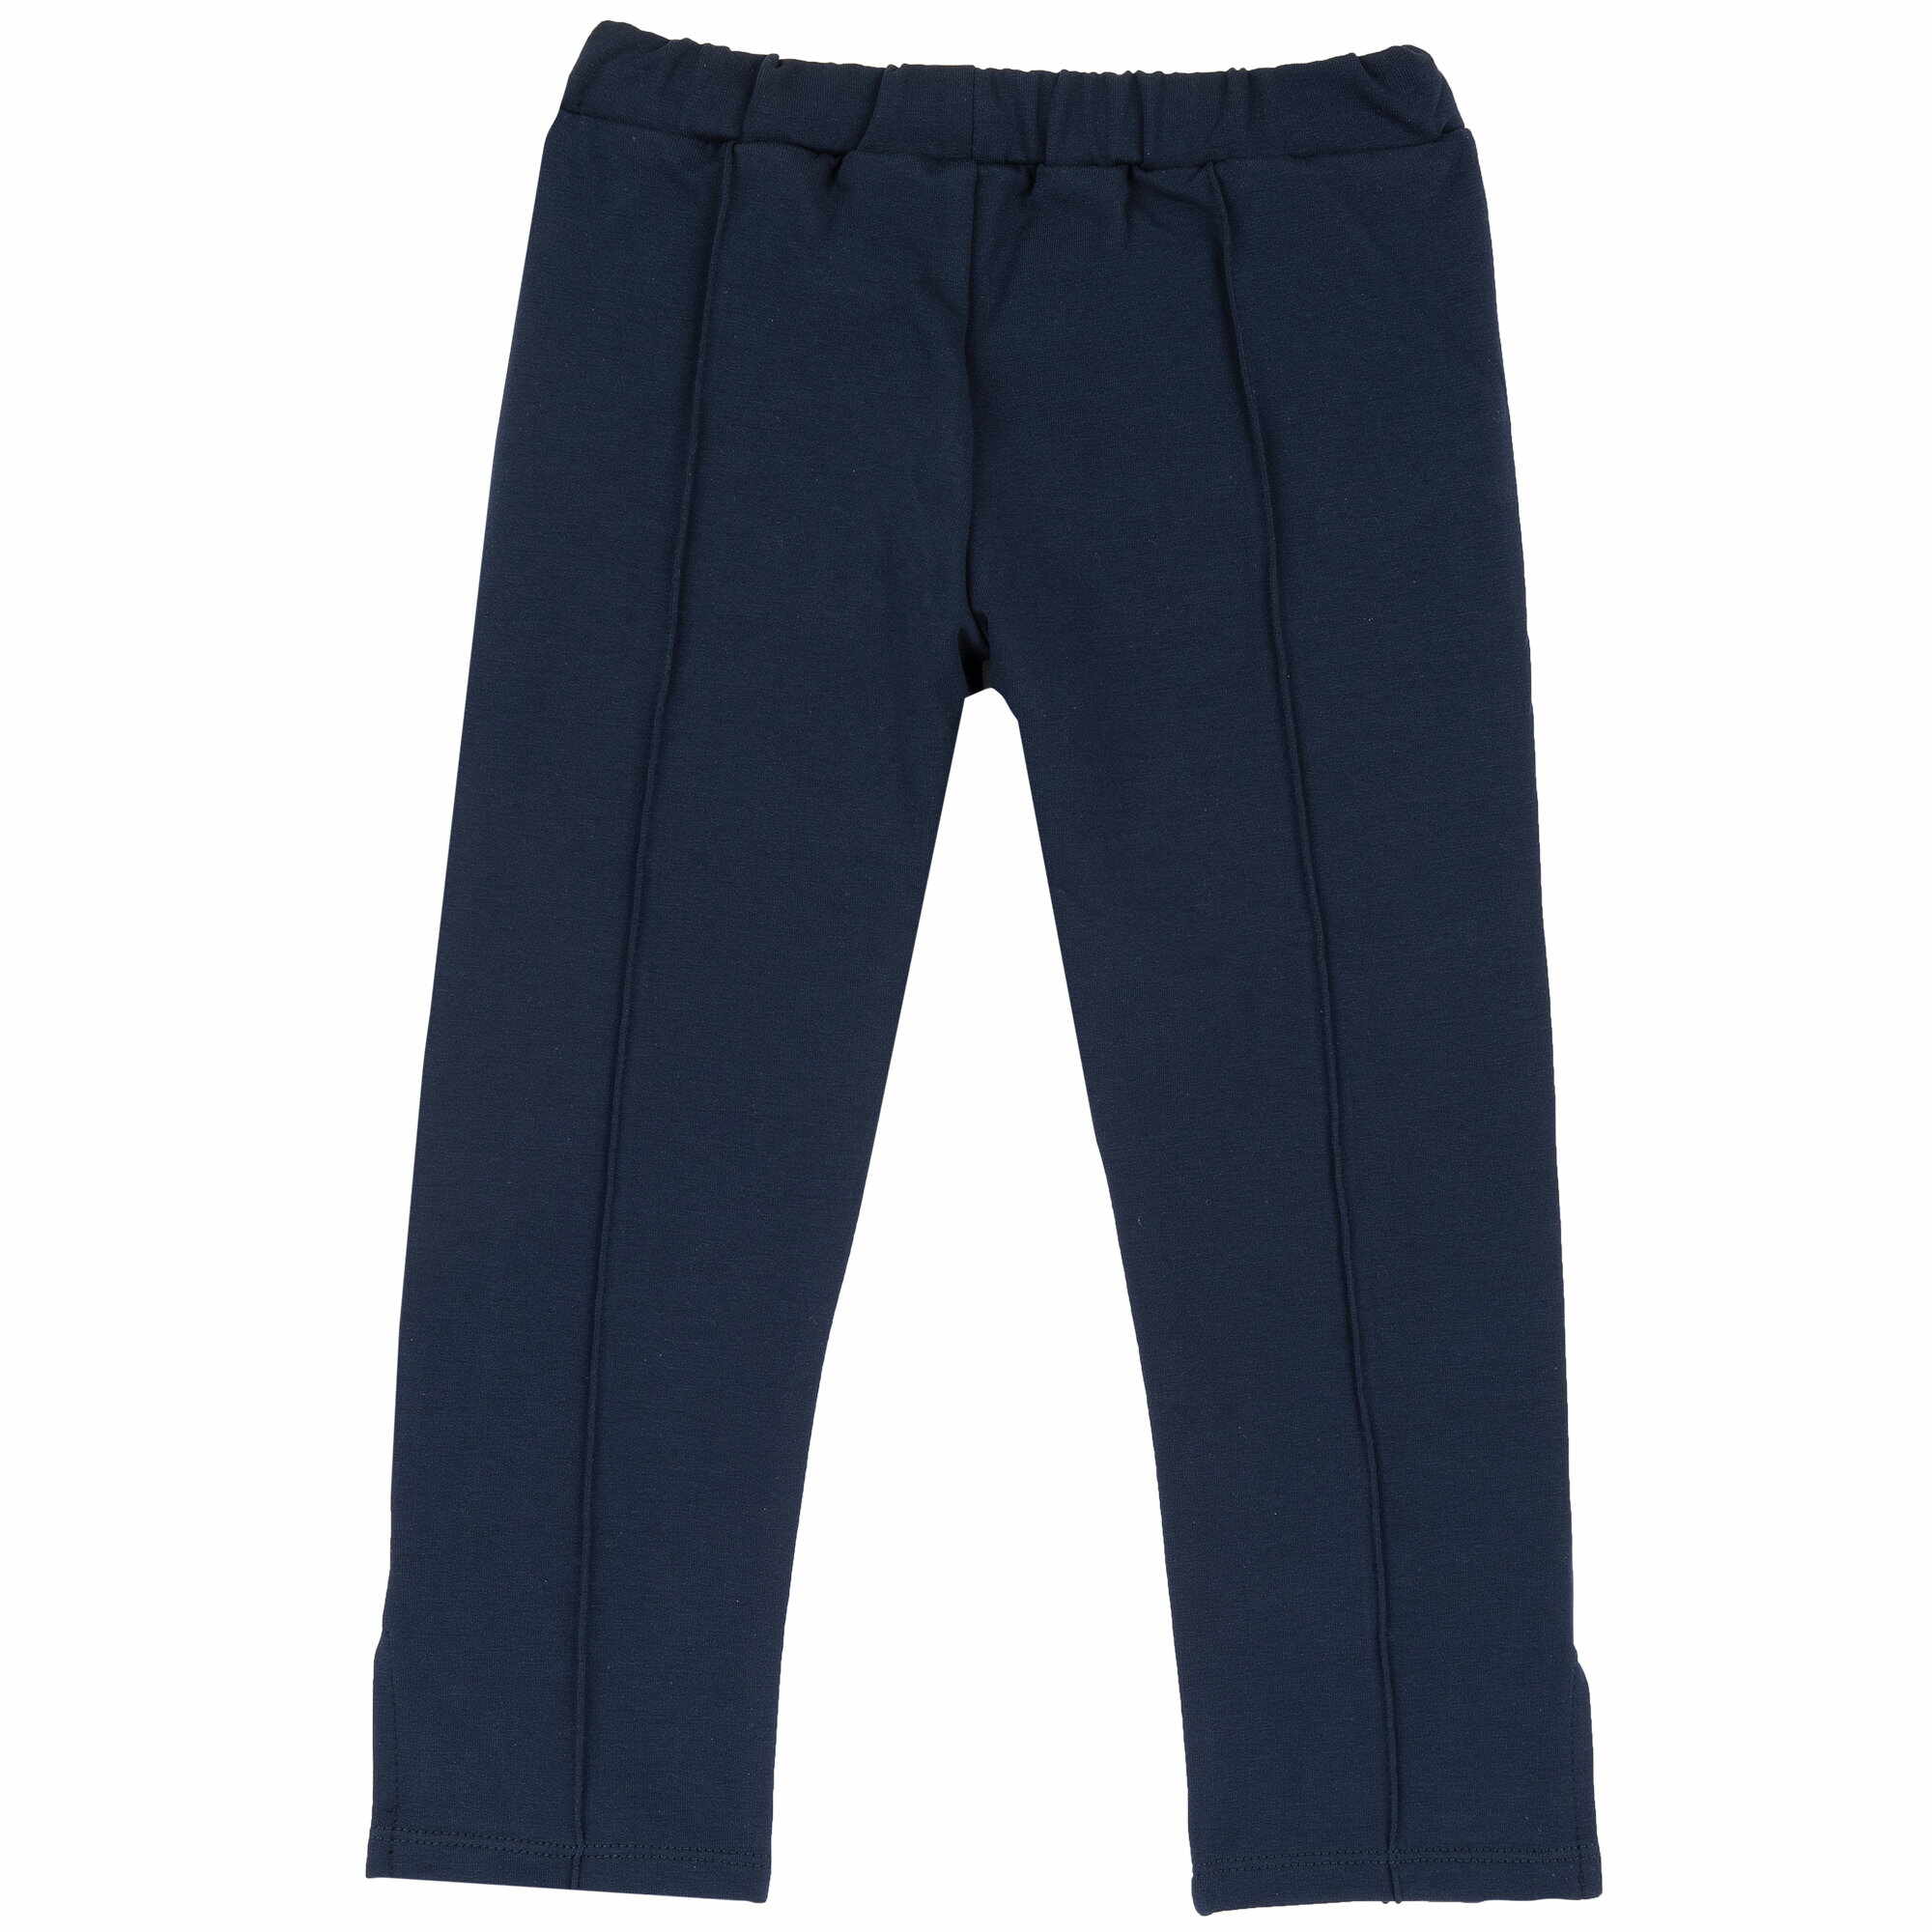 Pantaloni copii Chicco, Albastru Inchis, 08985-66MC